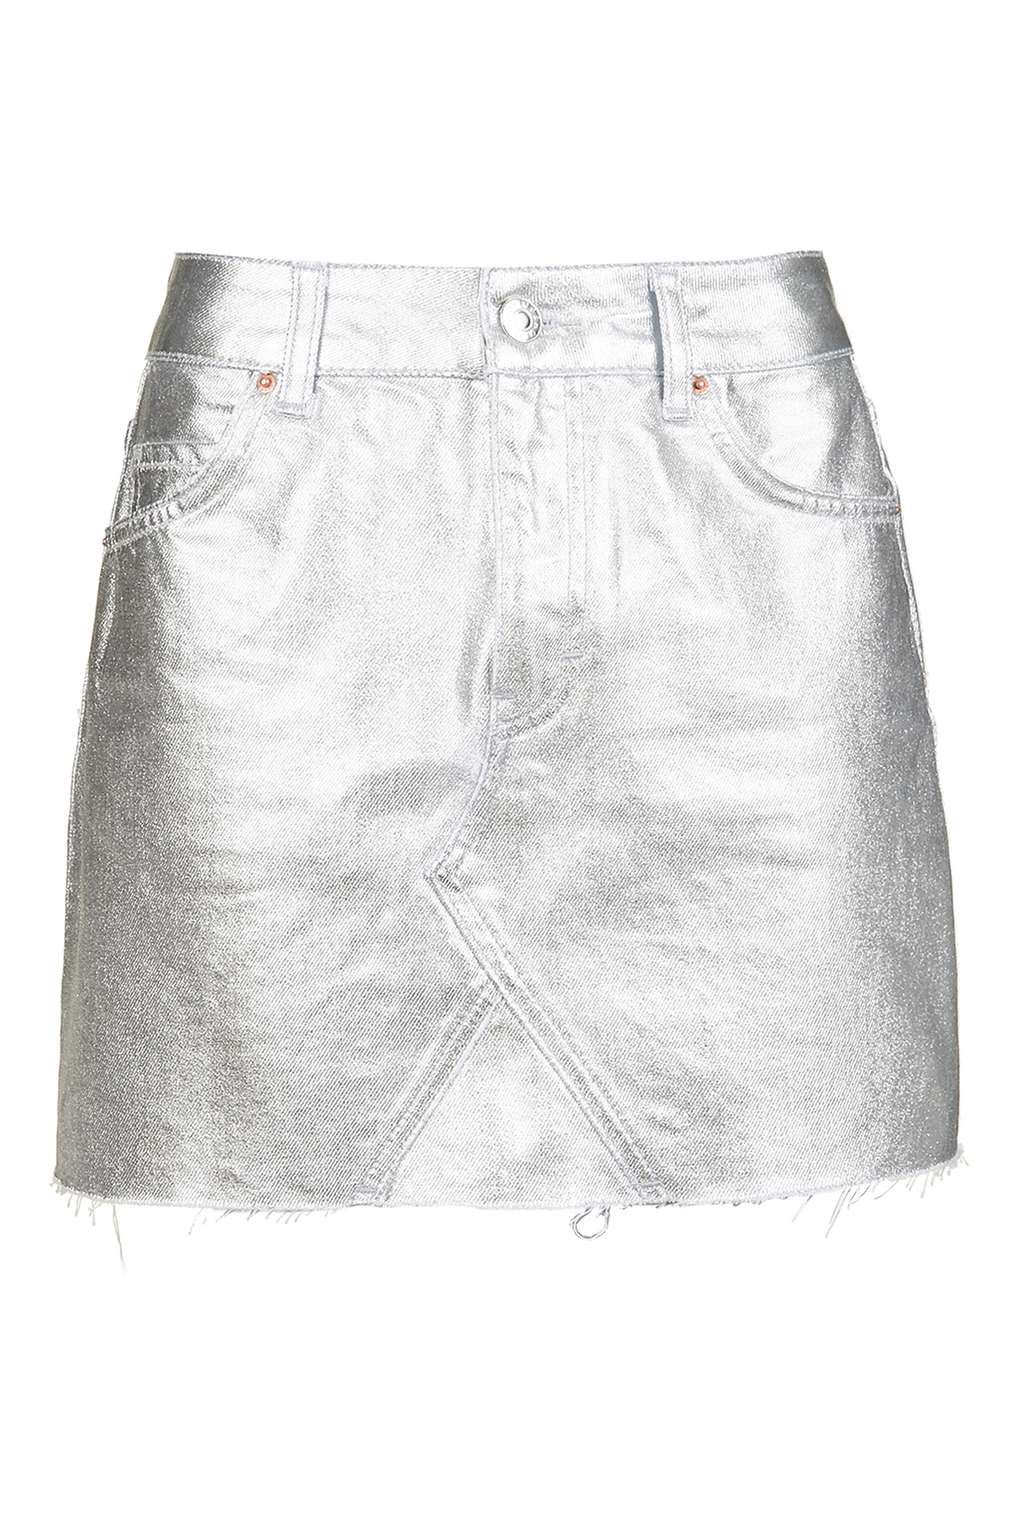 Prendas metalizadas para el verano: falda de Topshop